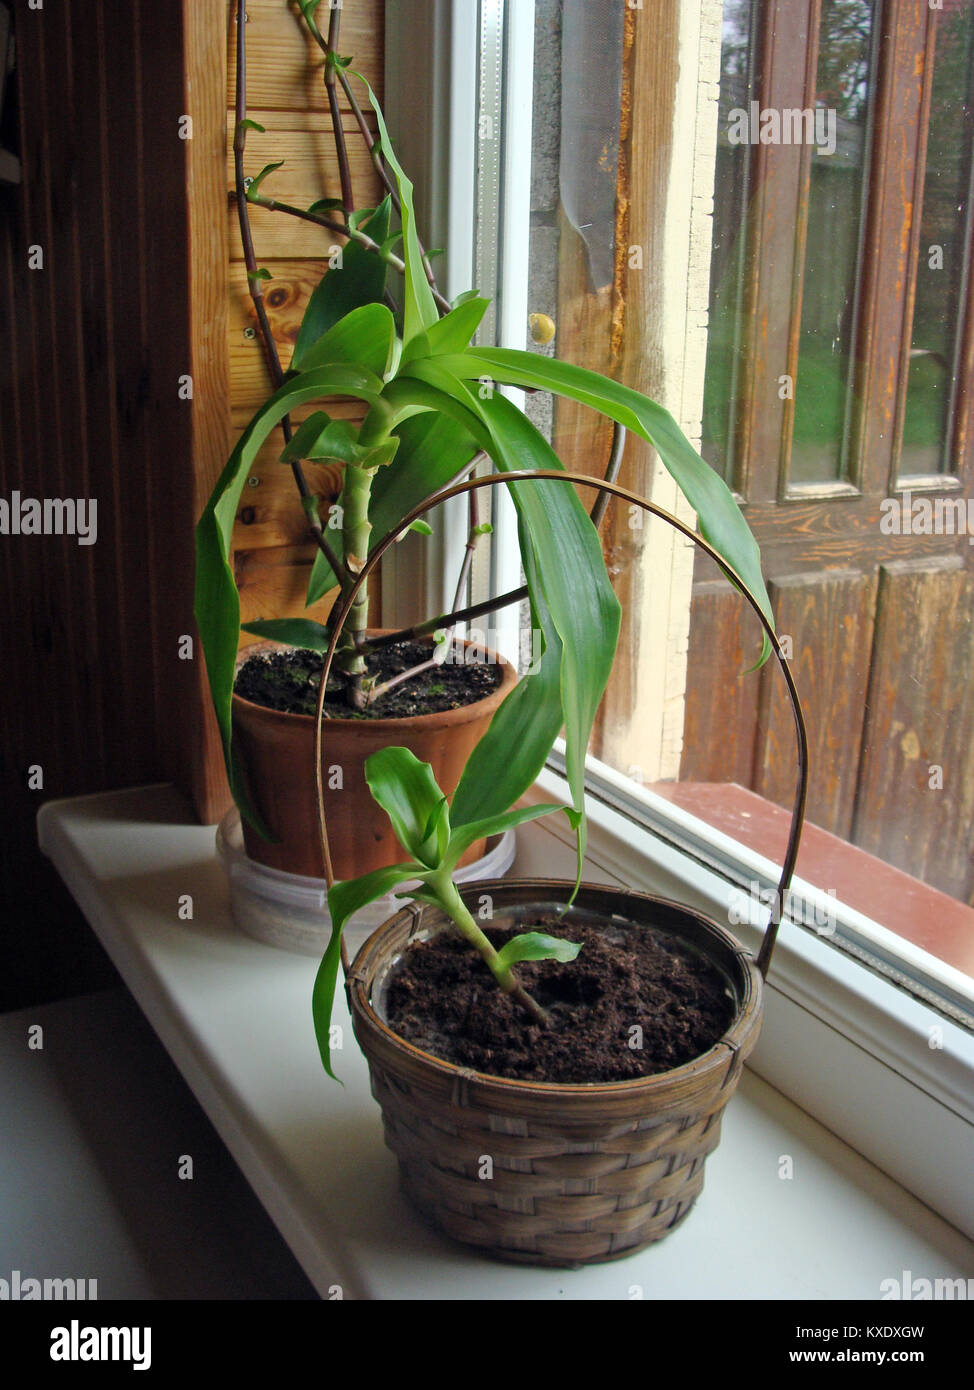 Callisia fragrans comunemente noto come il cestello impianto impianto a catena o pollici di crescita della pianta in vasi di fiori sul davanzale della finestra Foto Stock